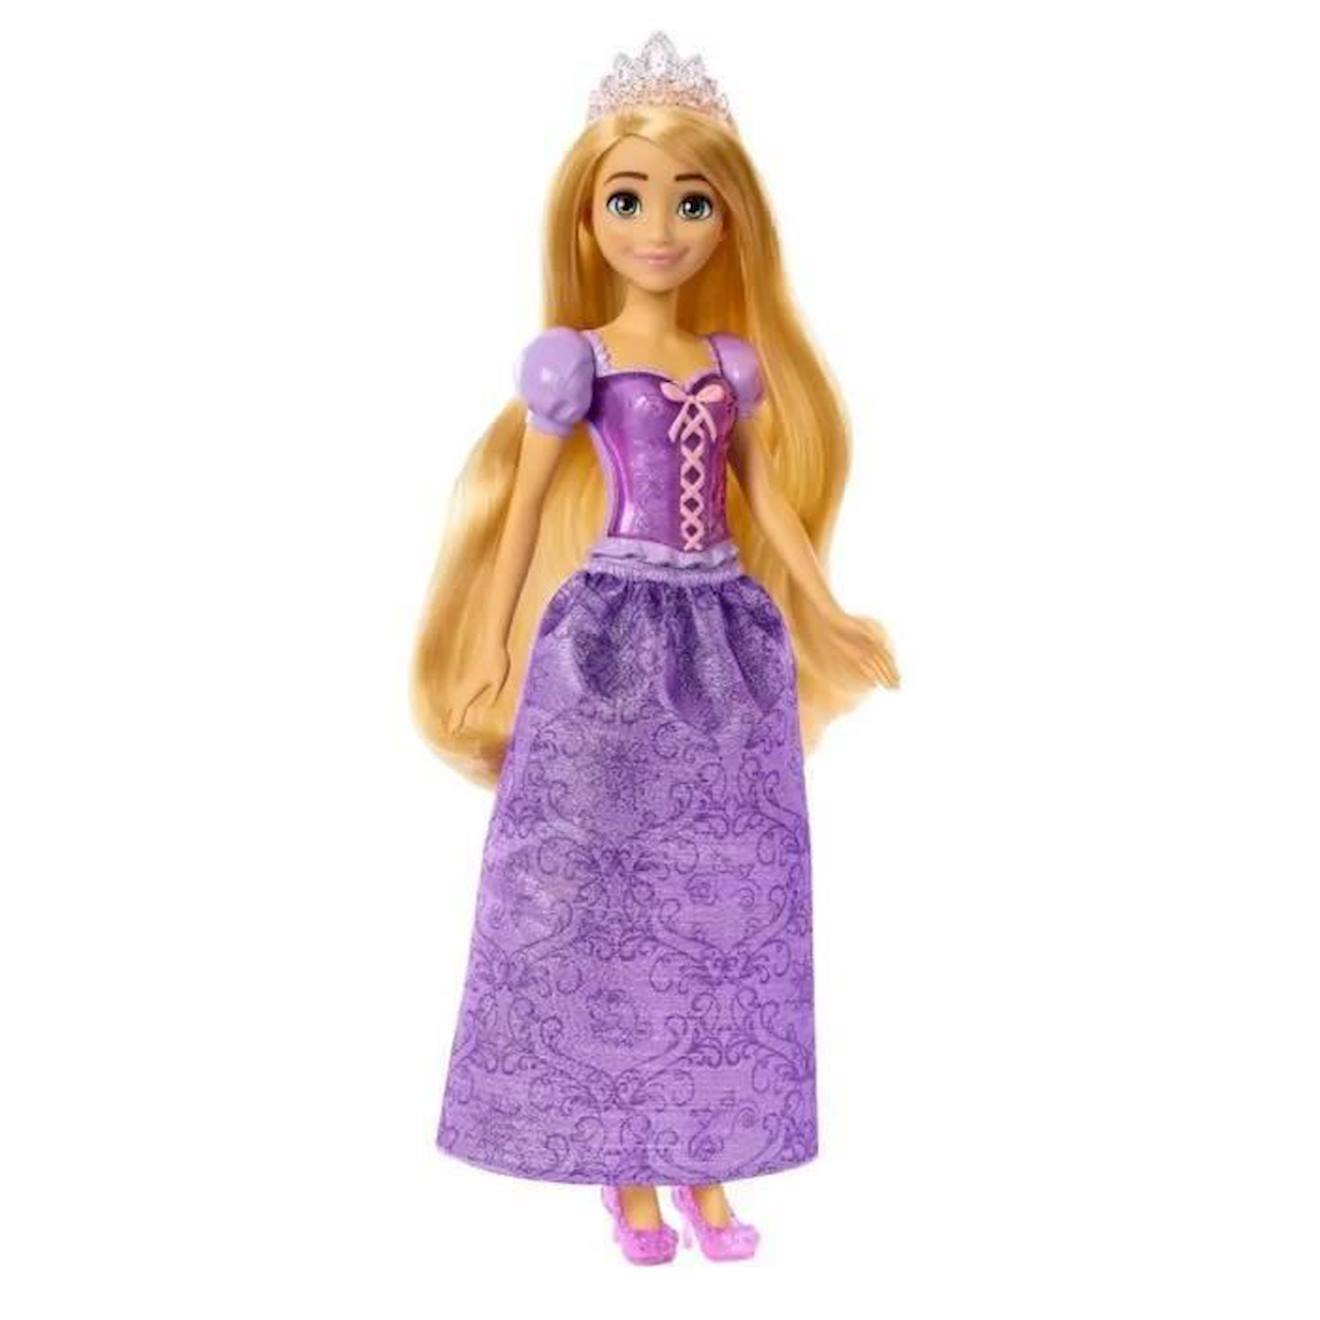 Poupée princesse Belle Disney 29cm au meilleur prix